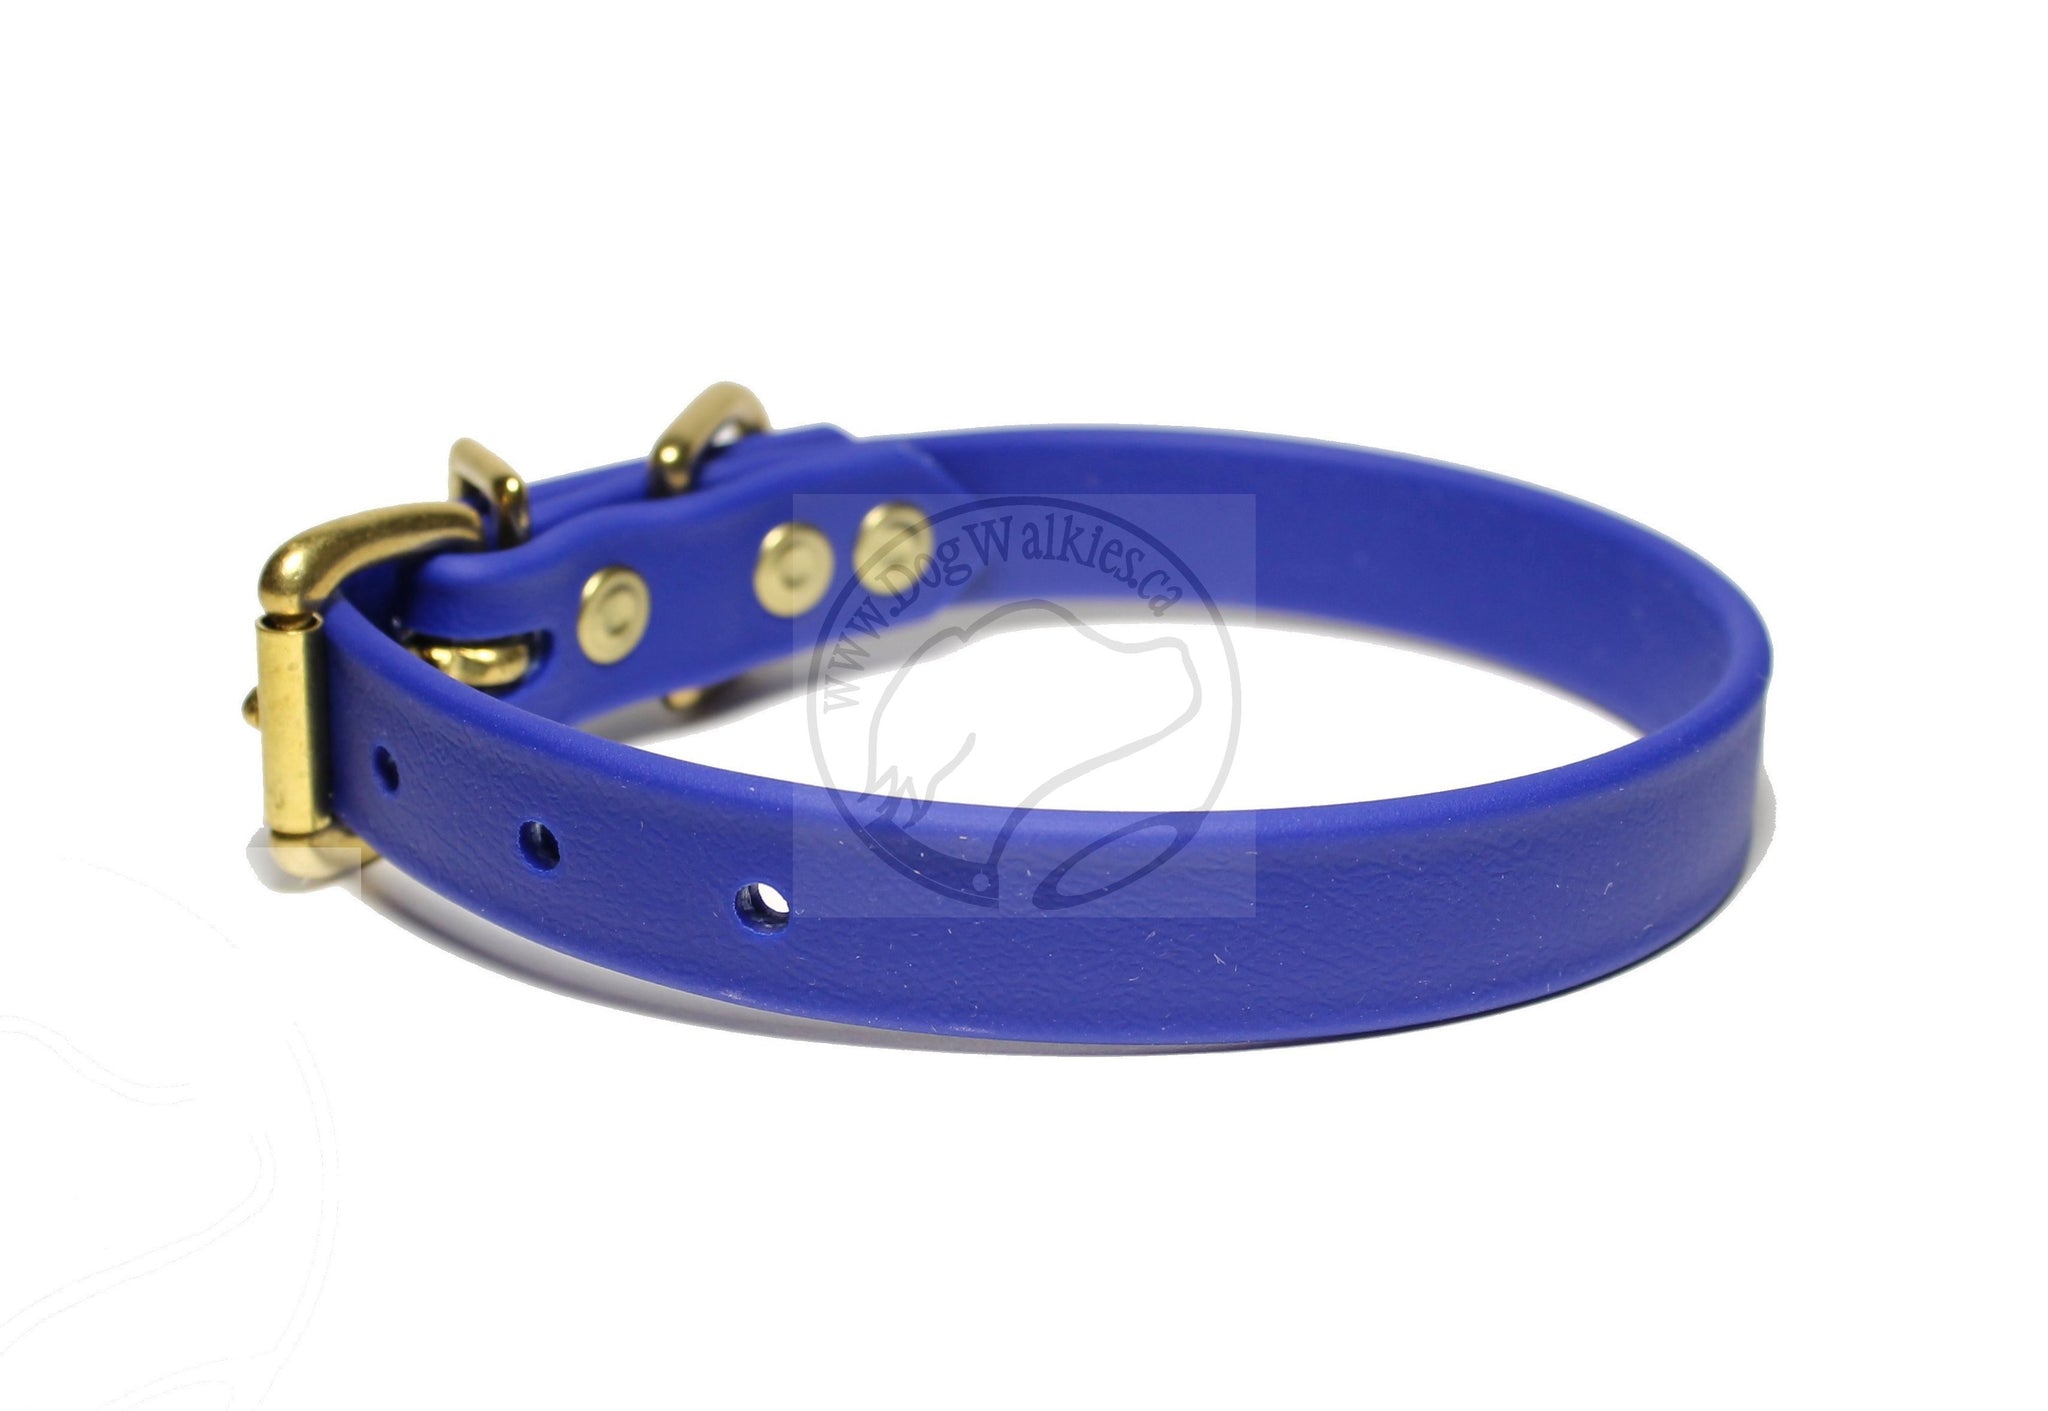 Royal Blue Biothane Dog Collar - 3/4" (20mm) wide